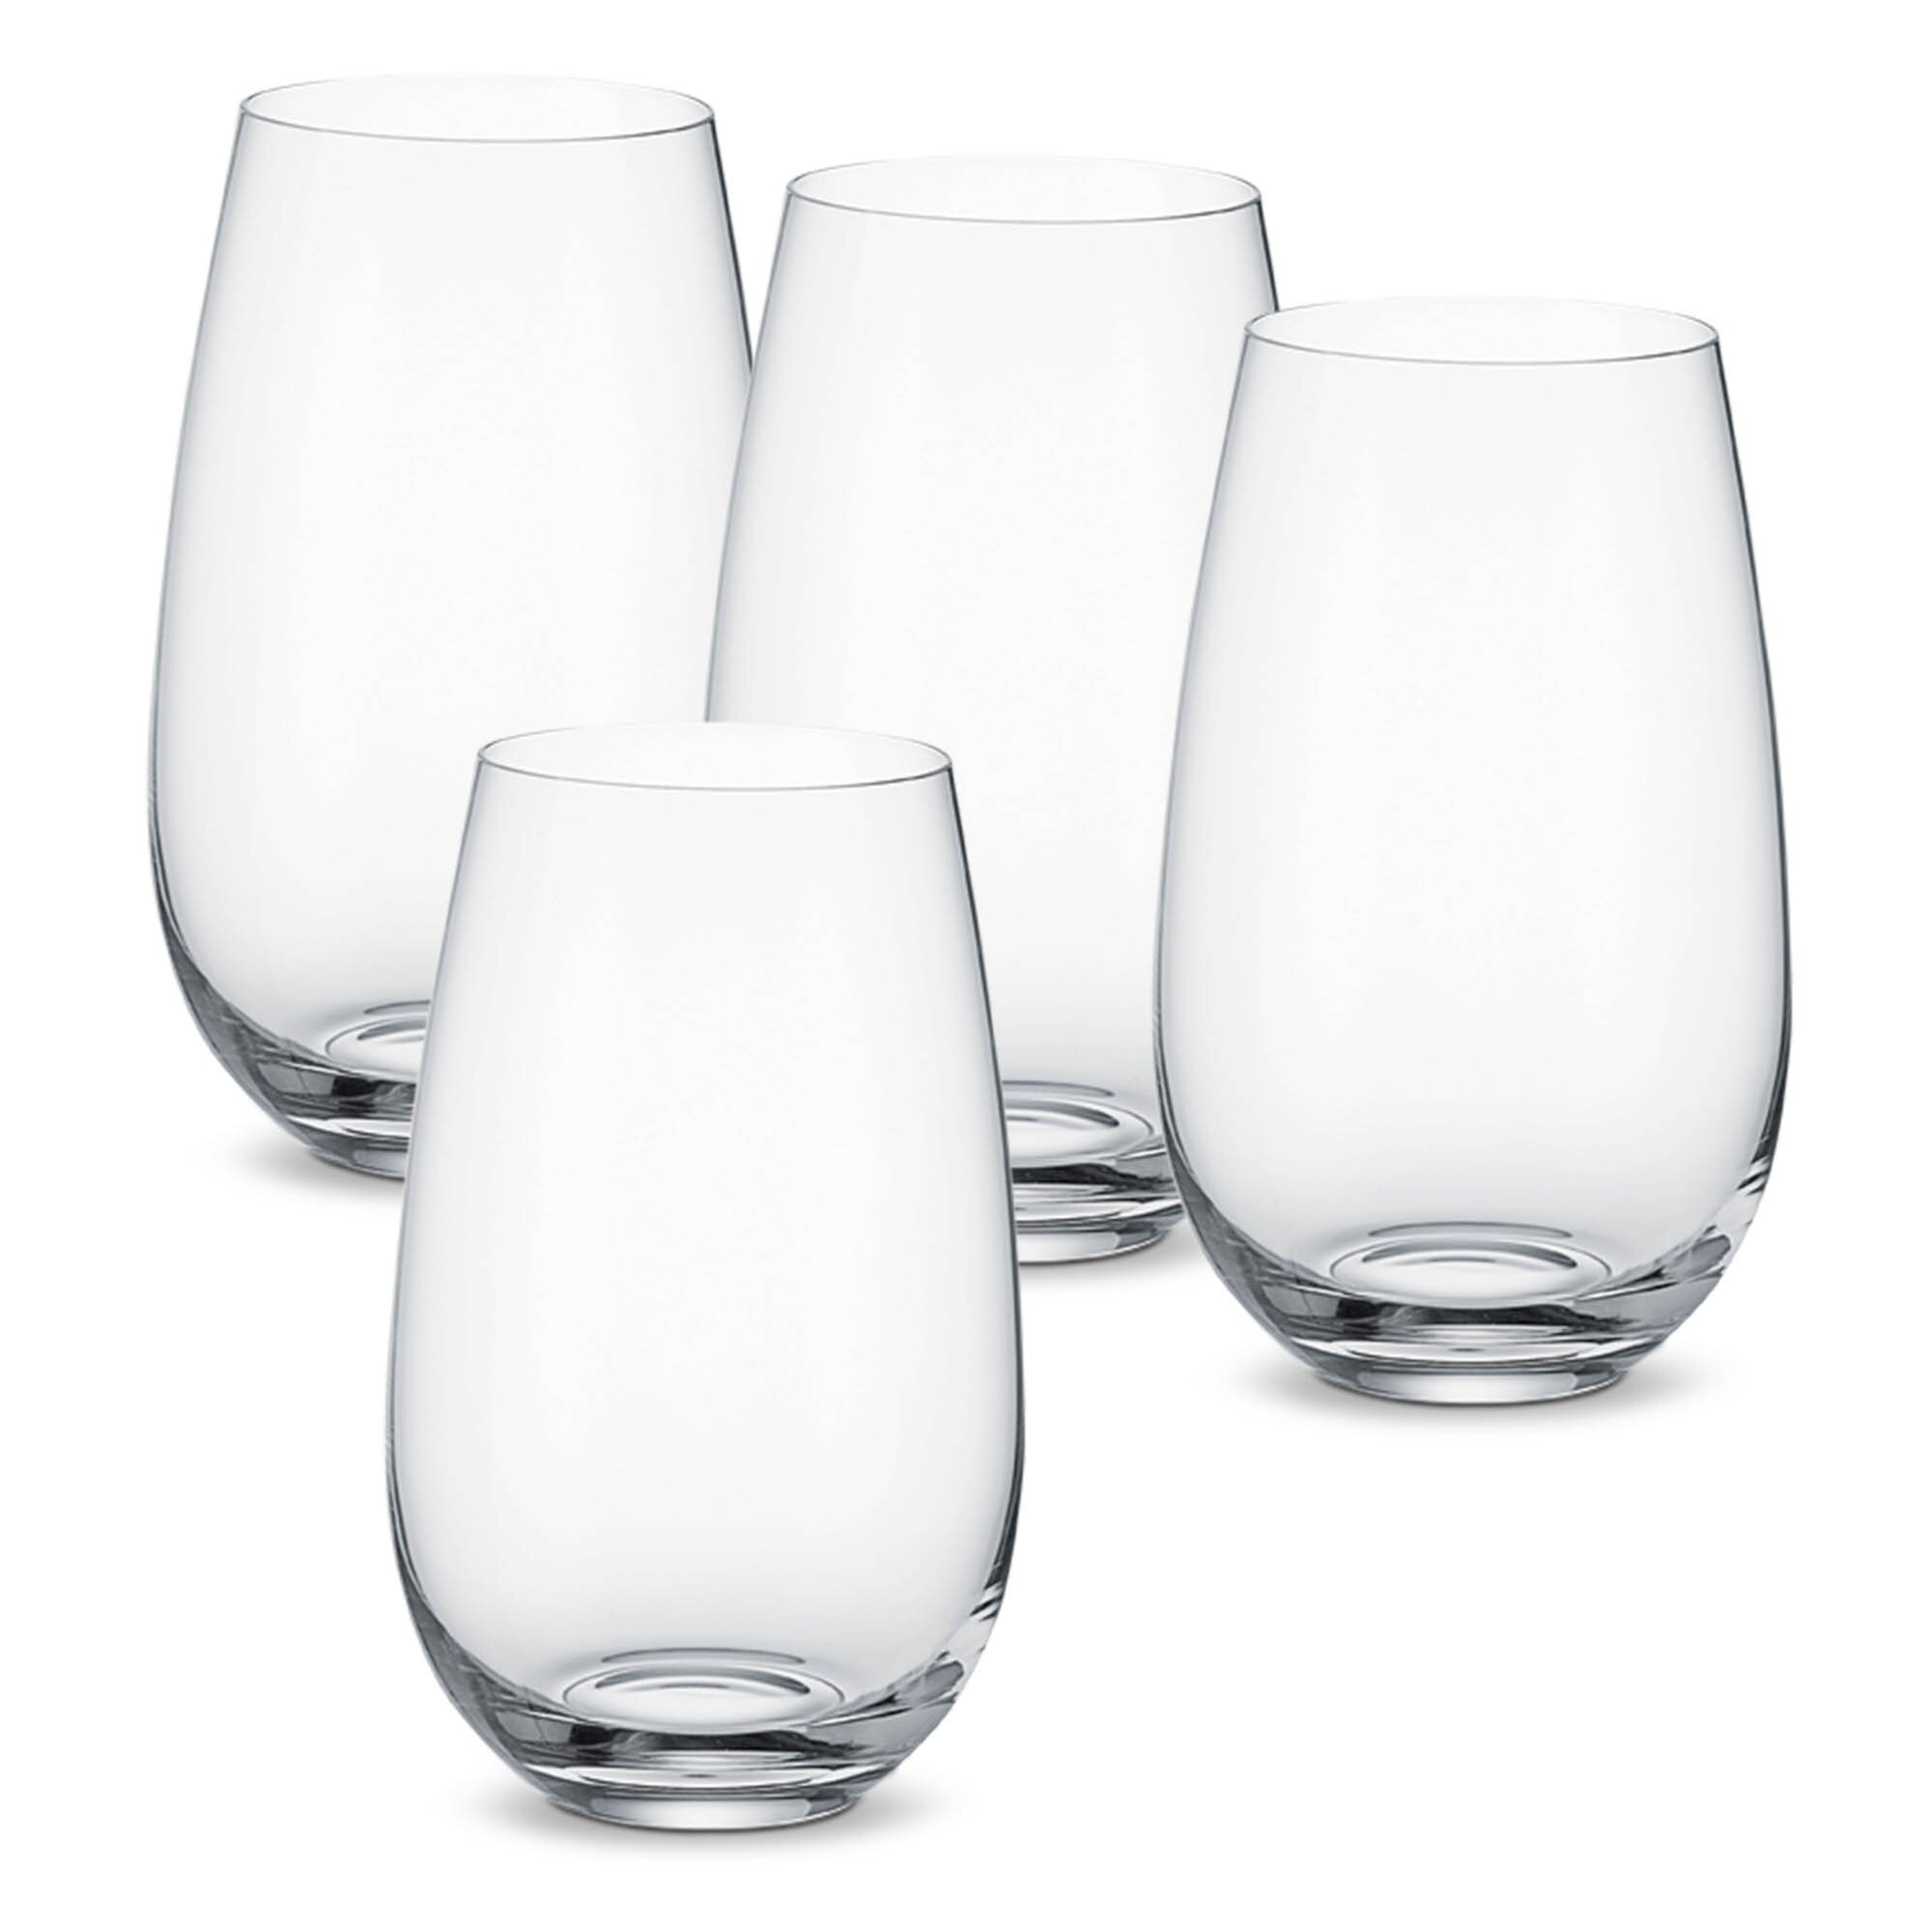 https://assets.wfcdn.com/im/90229033/compr-r85/1150/115025841/entree-set4-55-crystal-drinking-glasses.jpg